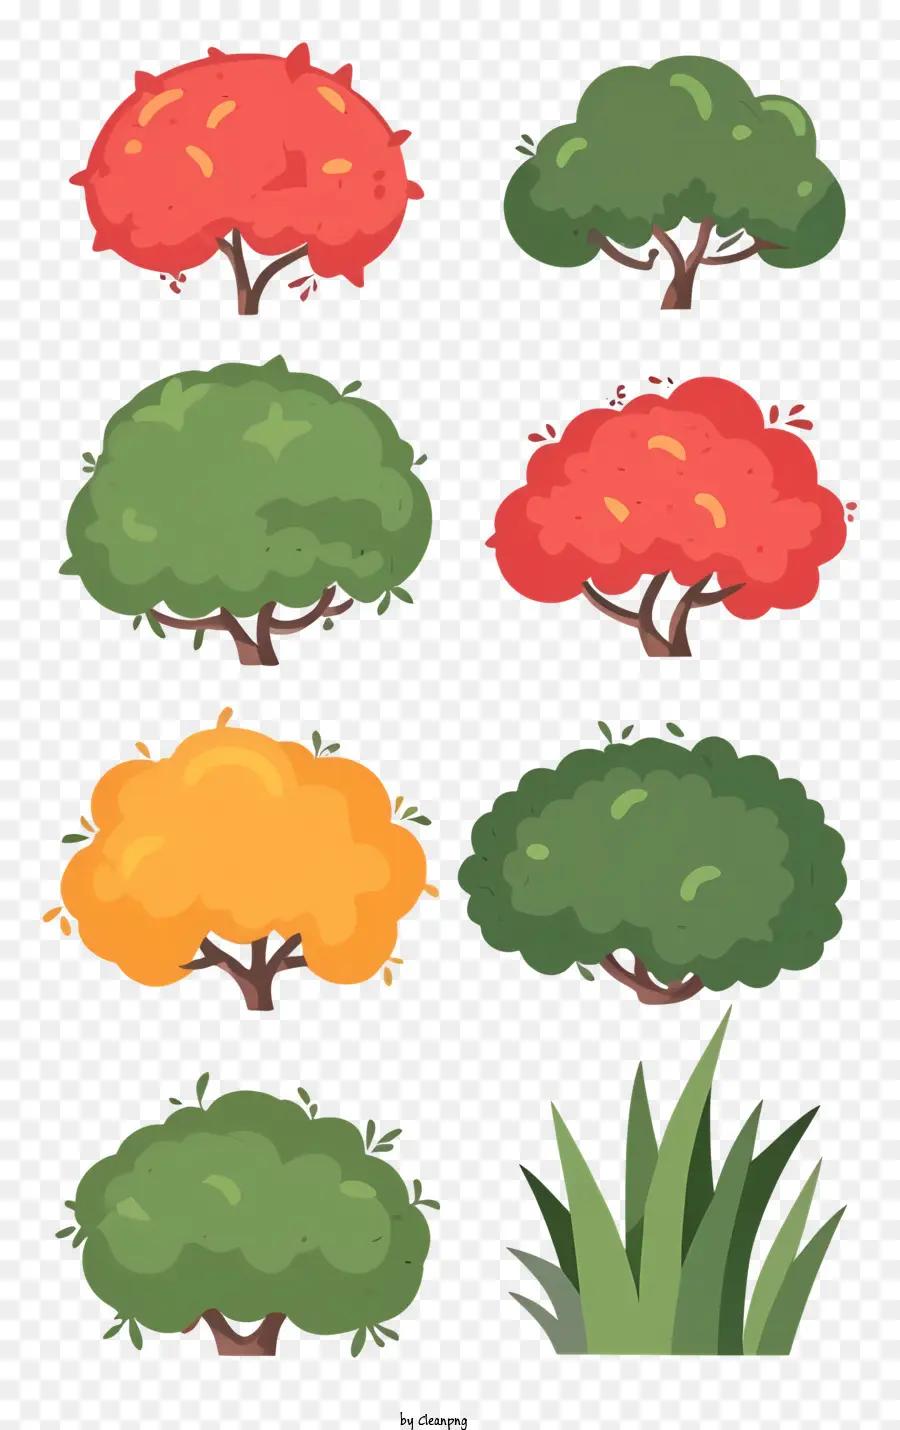 Orange - Bunte Bäume mit lebensechten Blättern und natürliches Aussehen